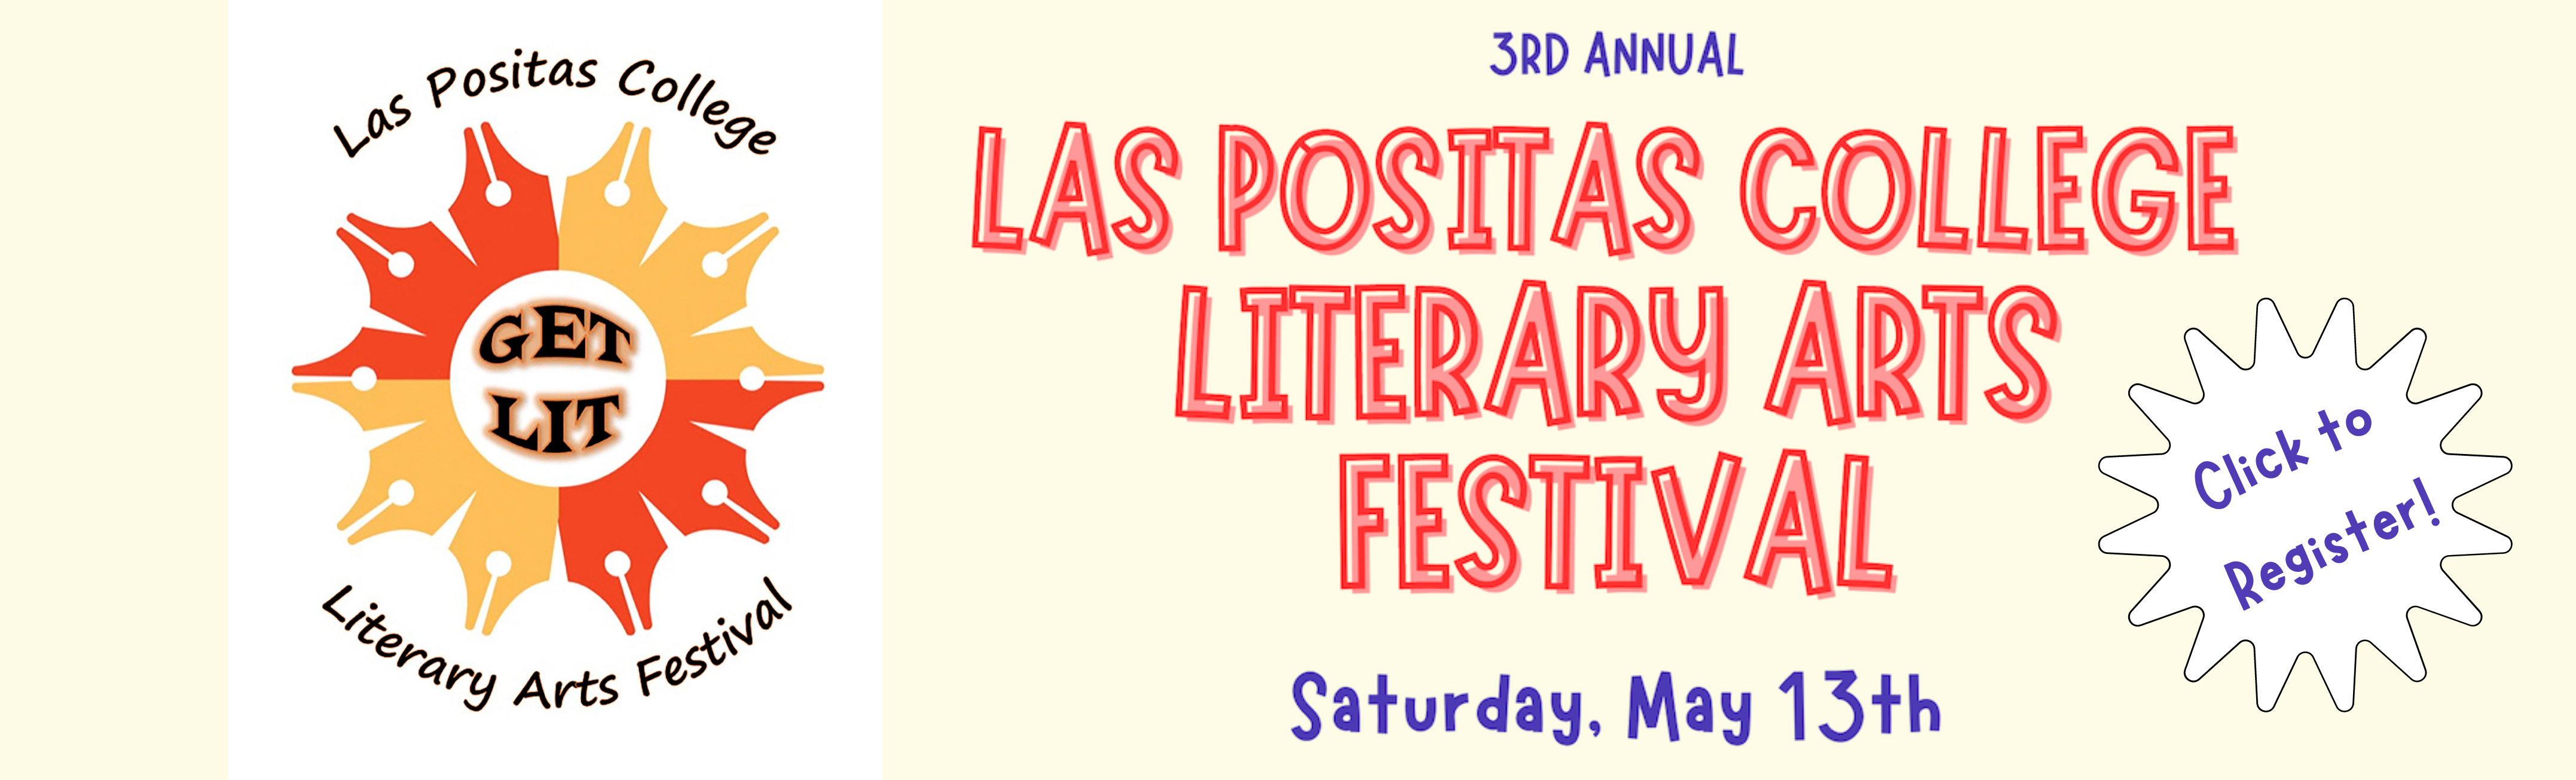 Las Positas College Literary Arts Festival. Saturday May 7, 2022.